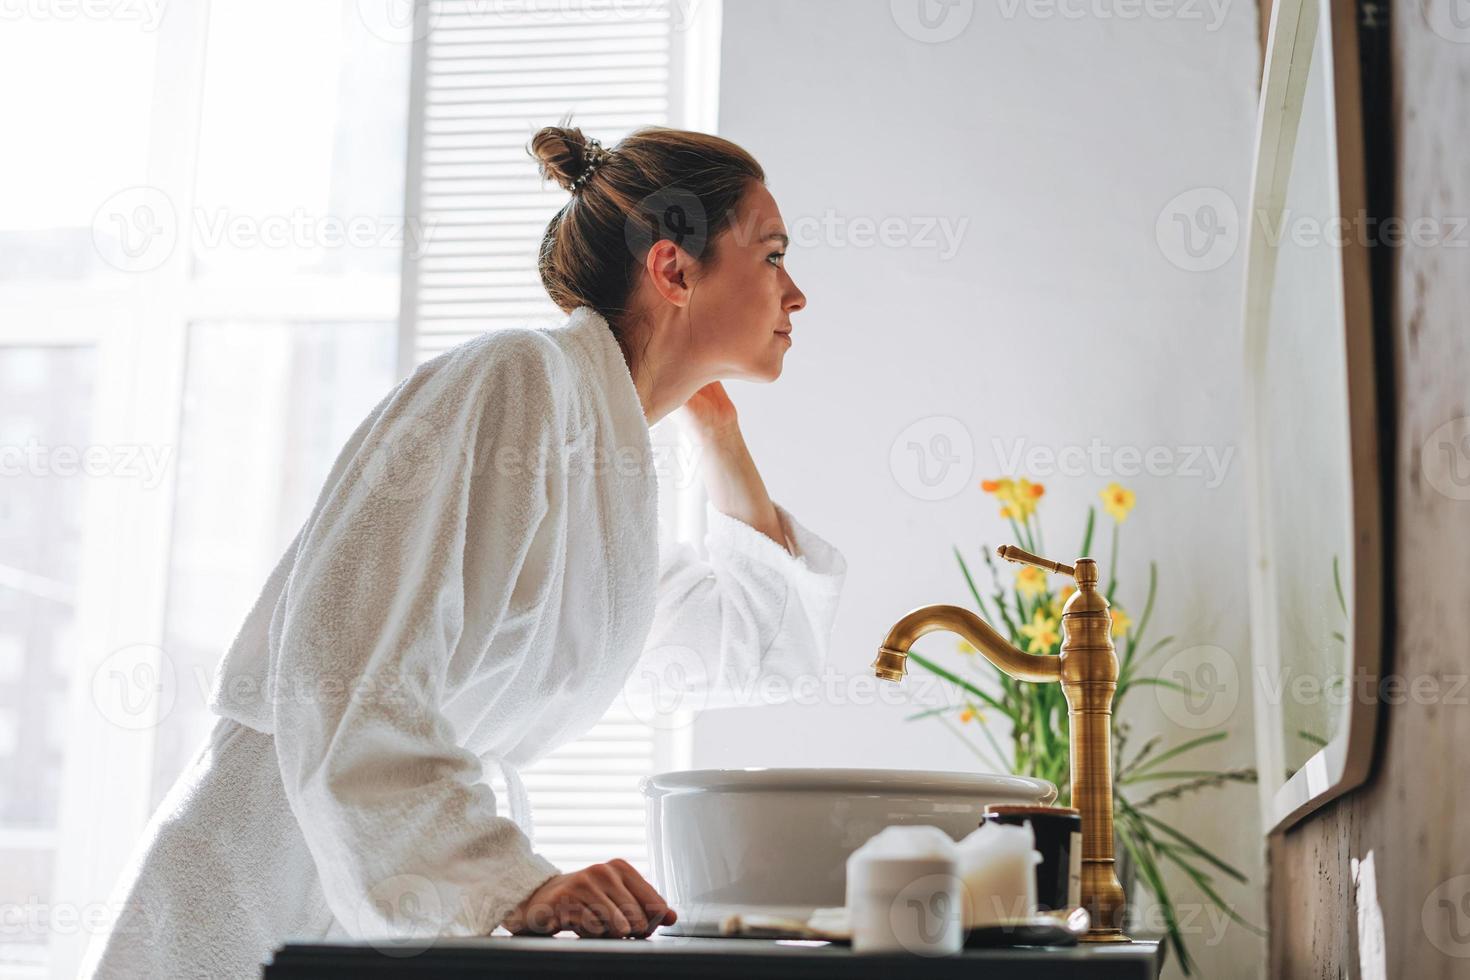 jovem de cabelo comprido escuro em roupão branco perto do espelho no banheiro em casa foto